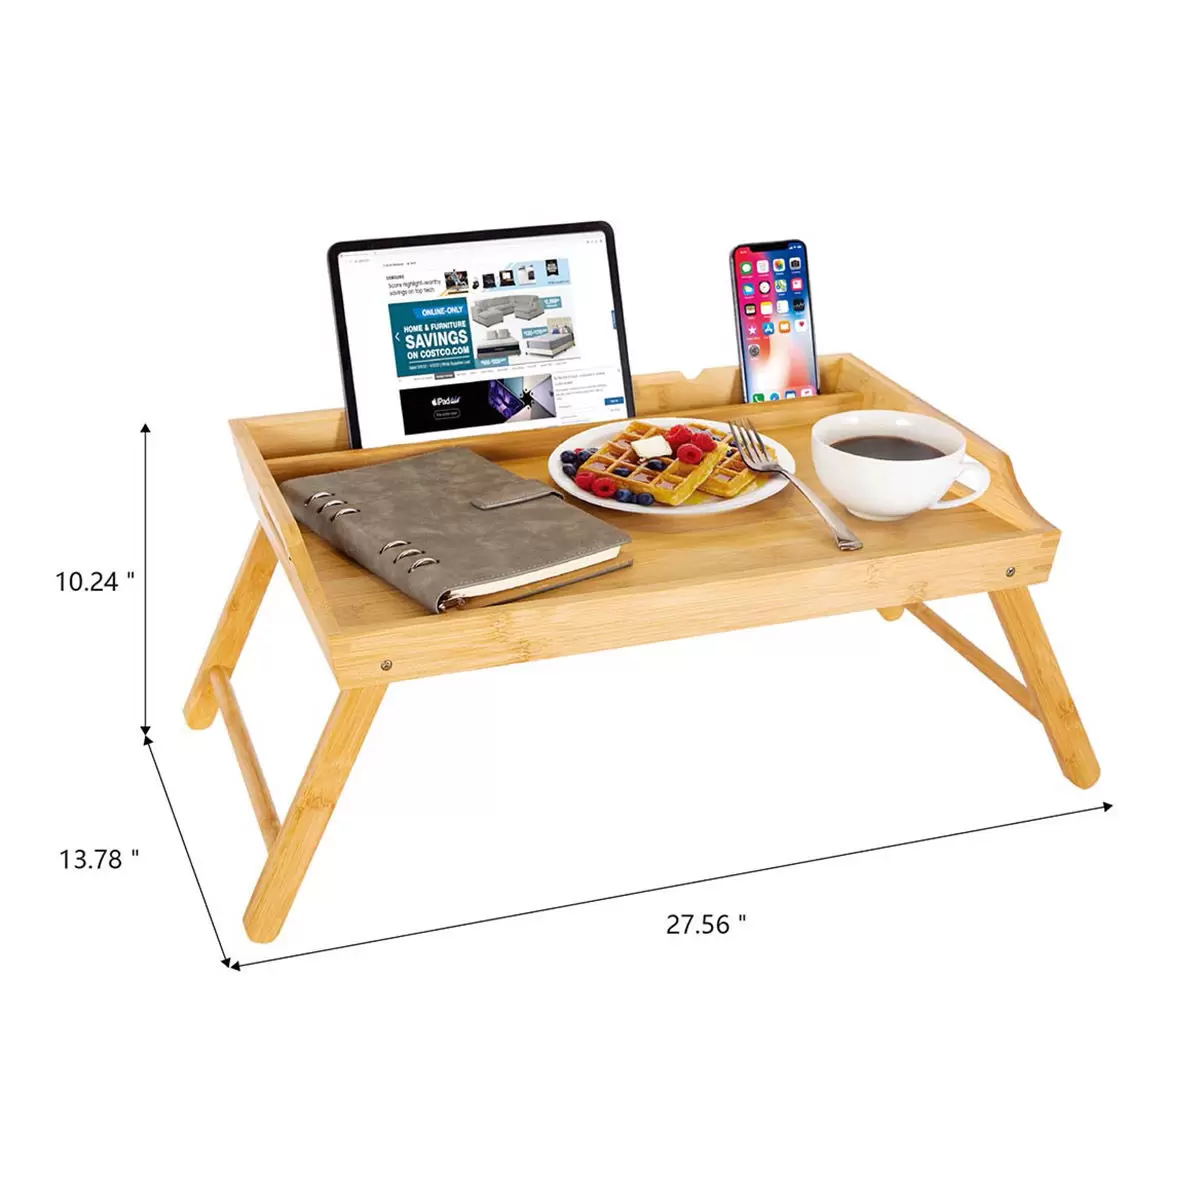 Carrara 多功能摺疊桌/床用桌 淺棕色